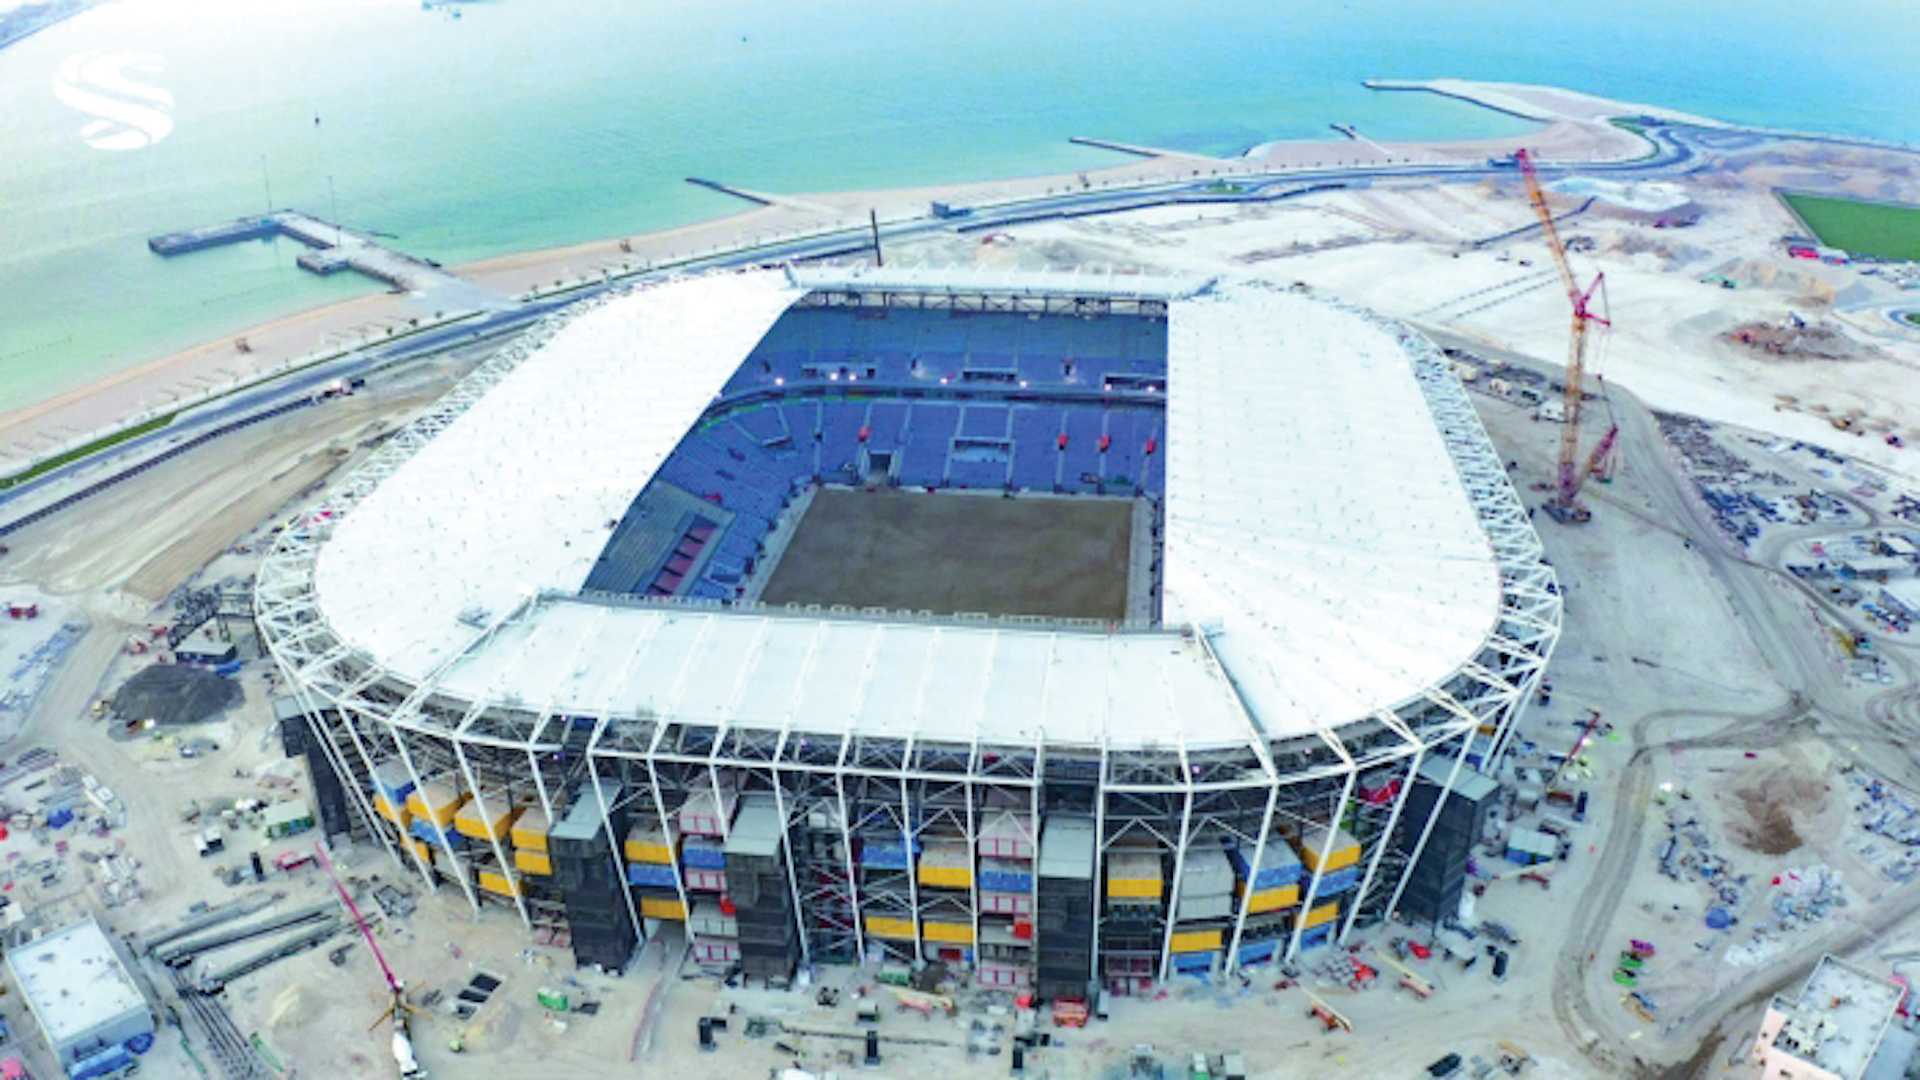 Sân vận động Ras Abu Aboud tổ chức World Cup 2022